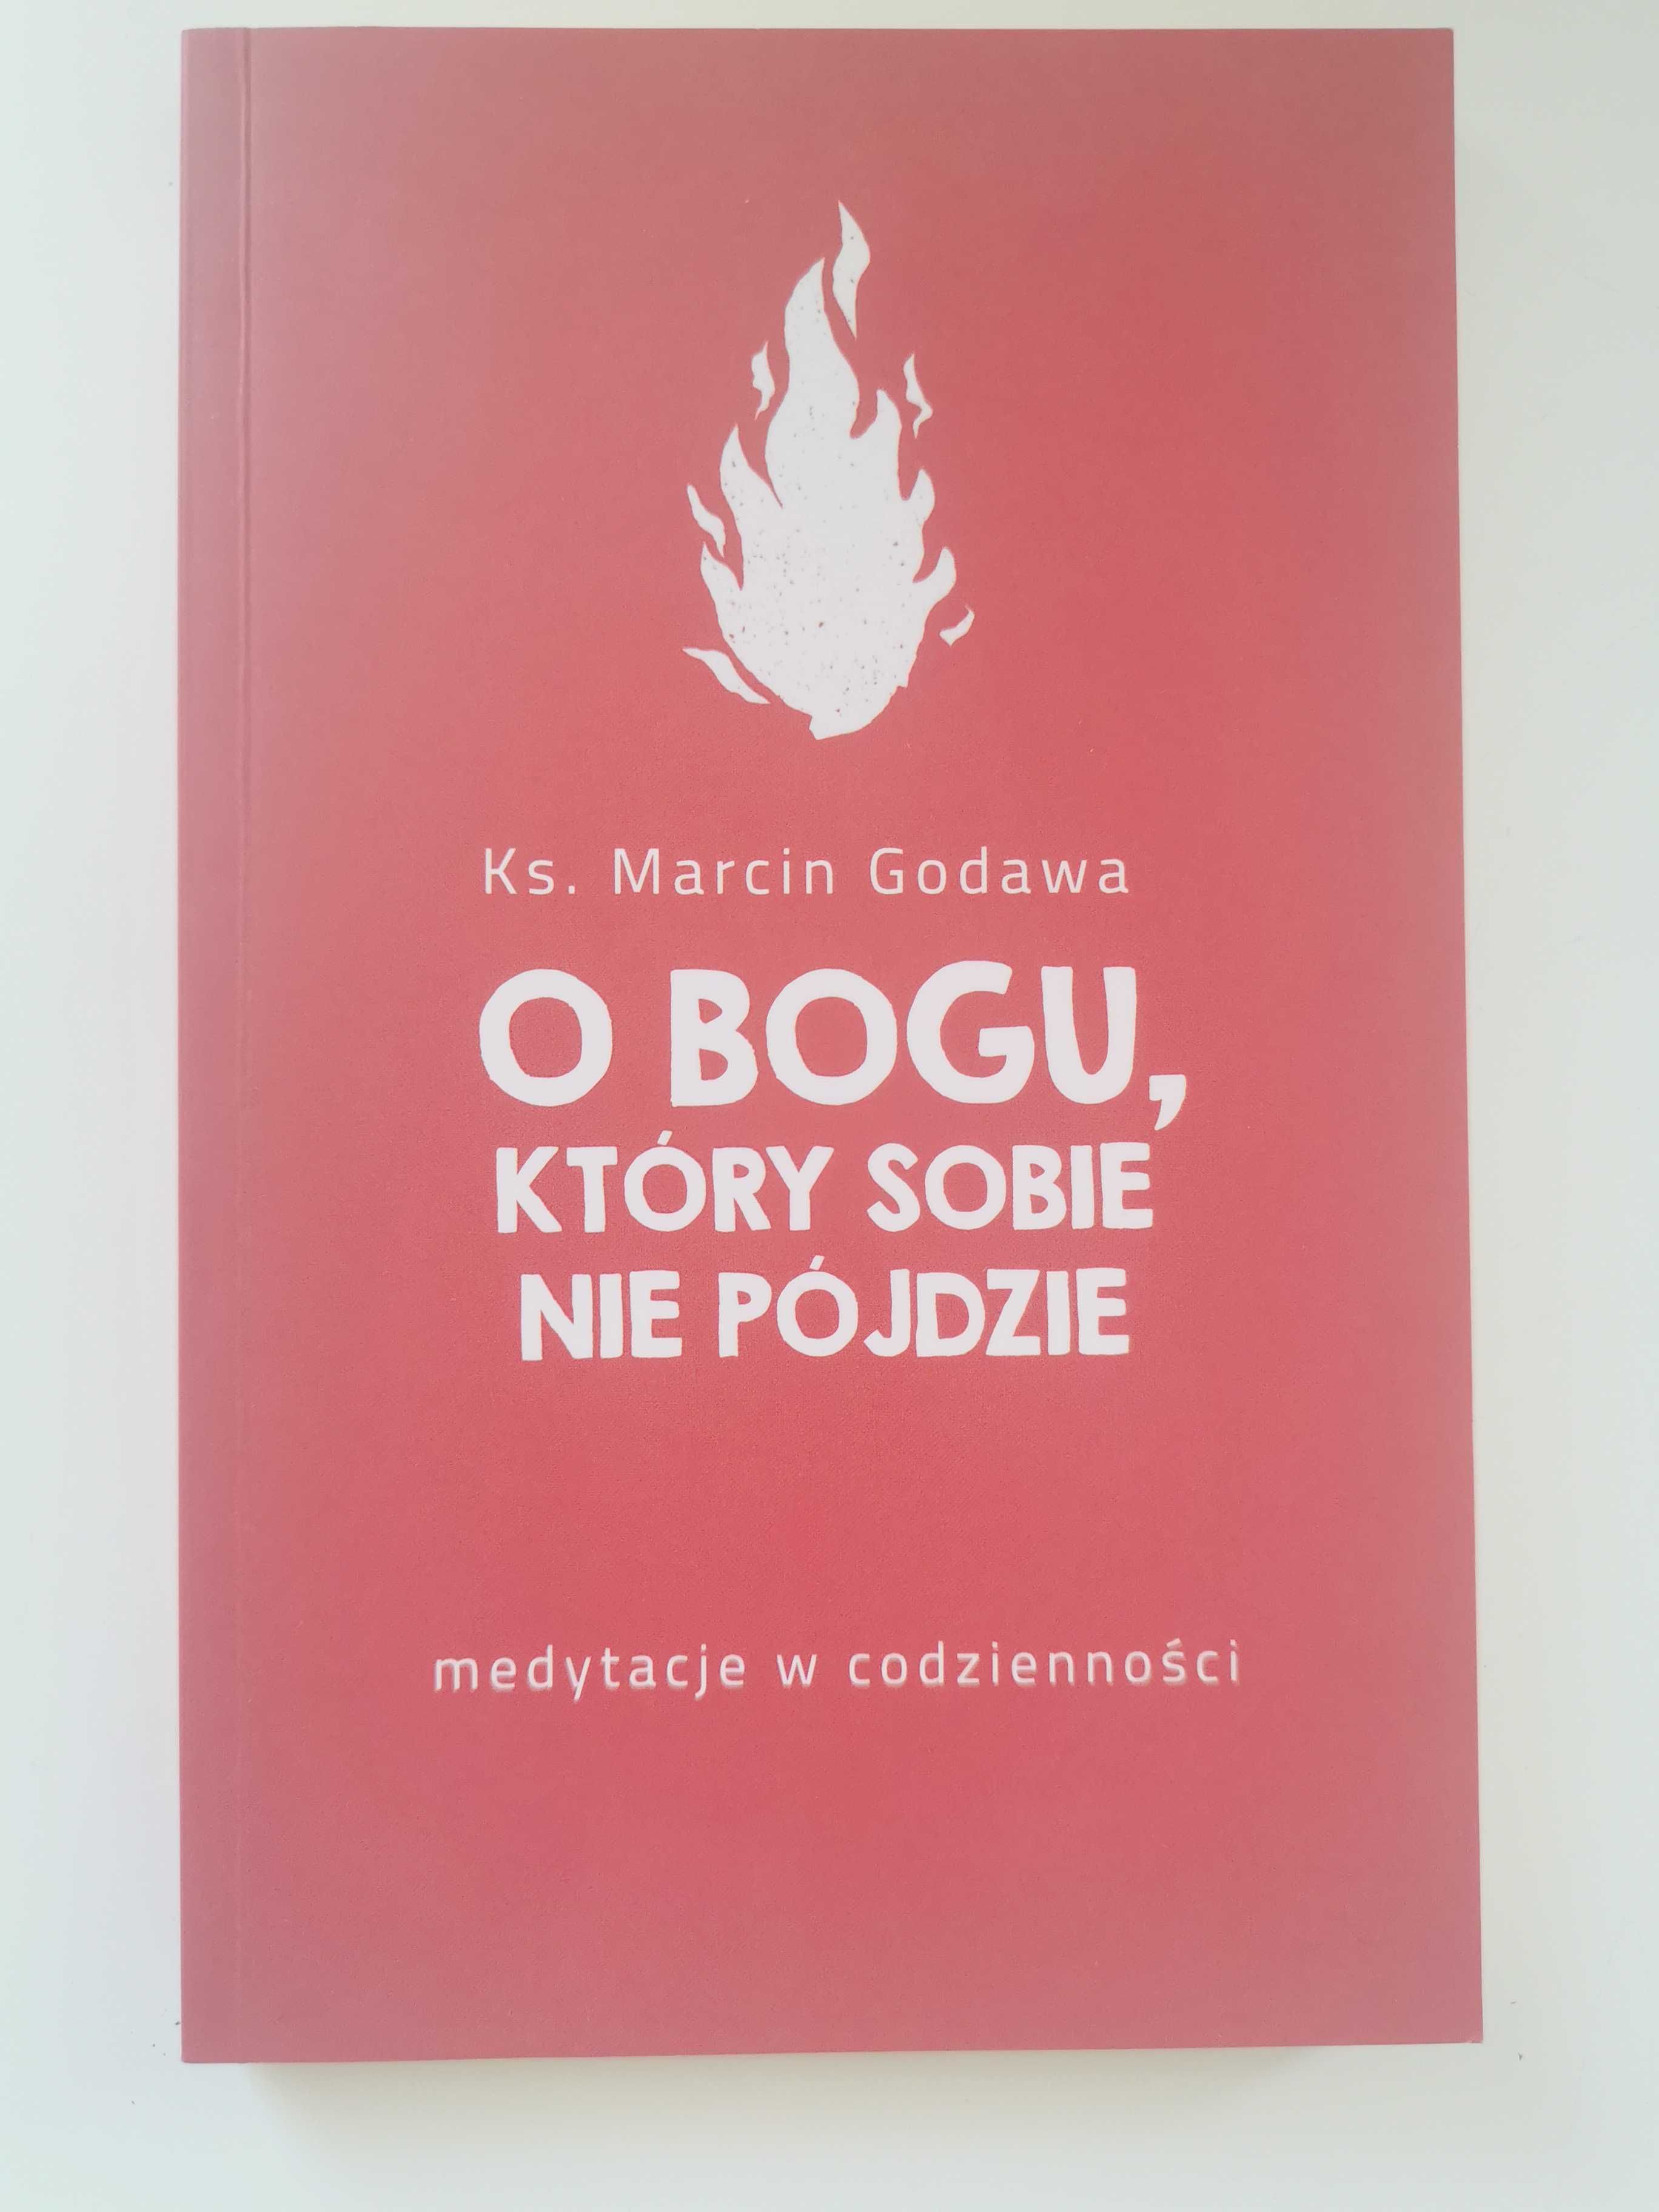 ks. Marcin Godawa - O Bogu, który sobie nie pójdzie